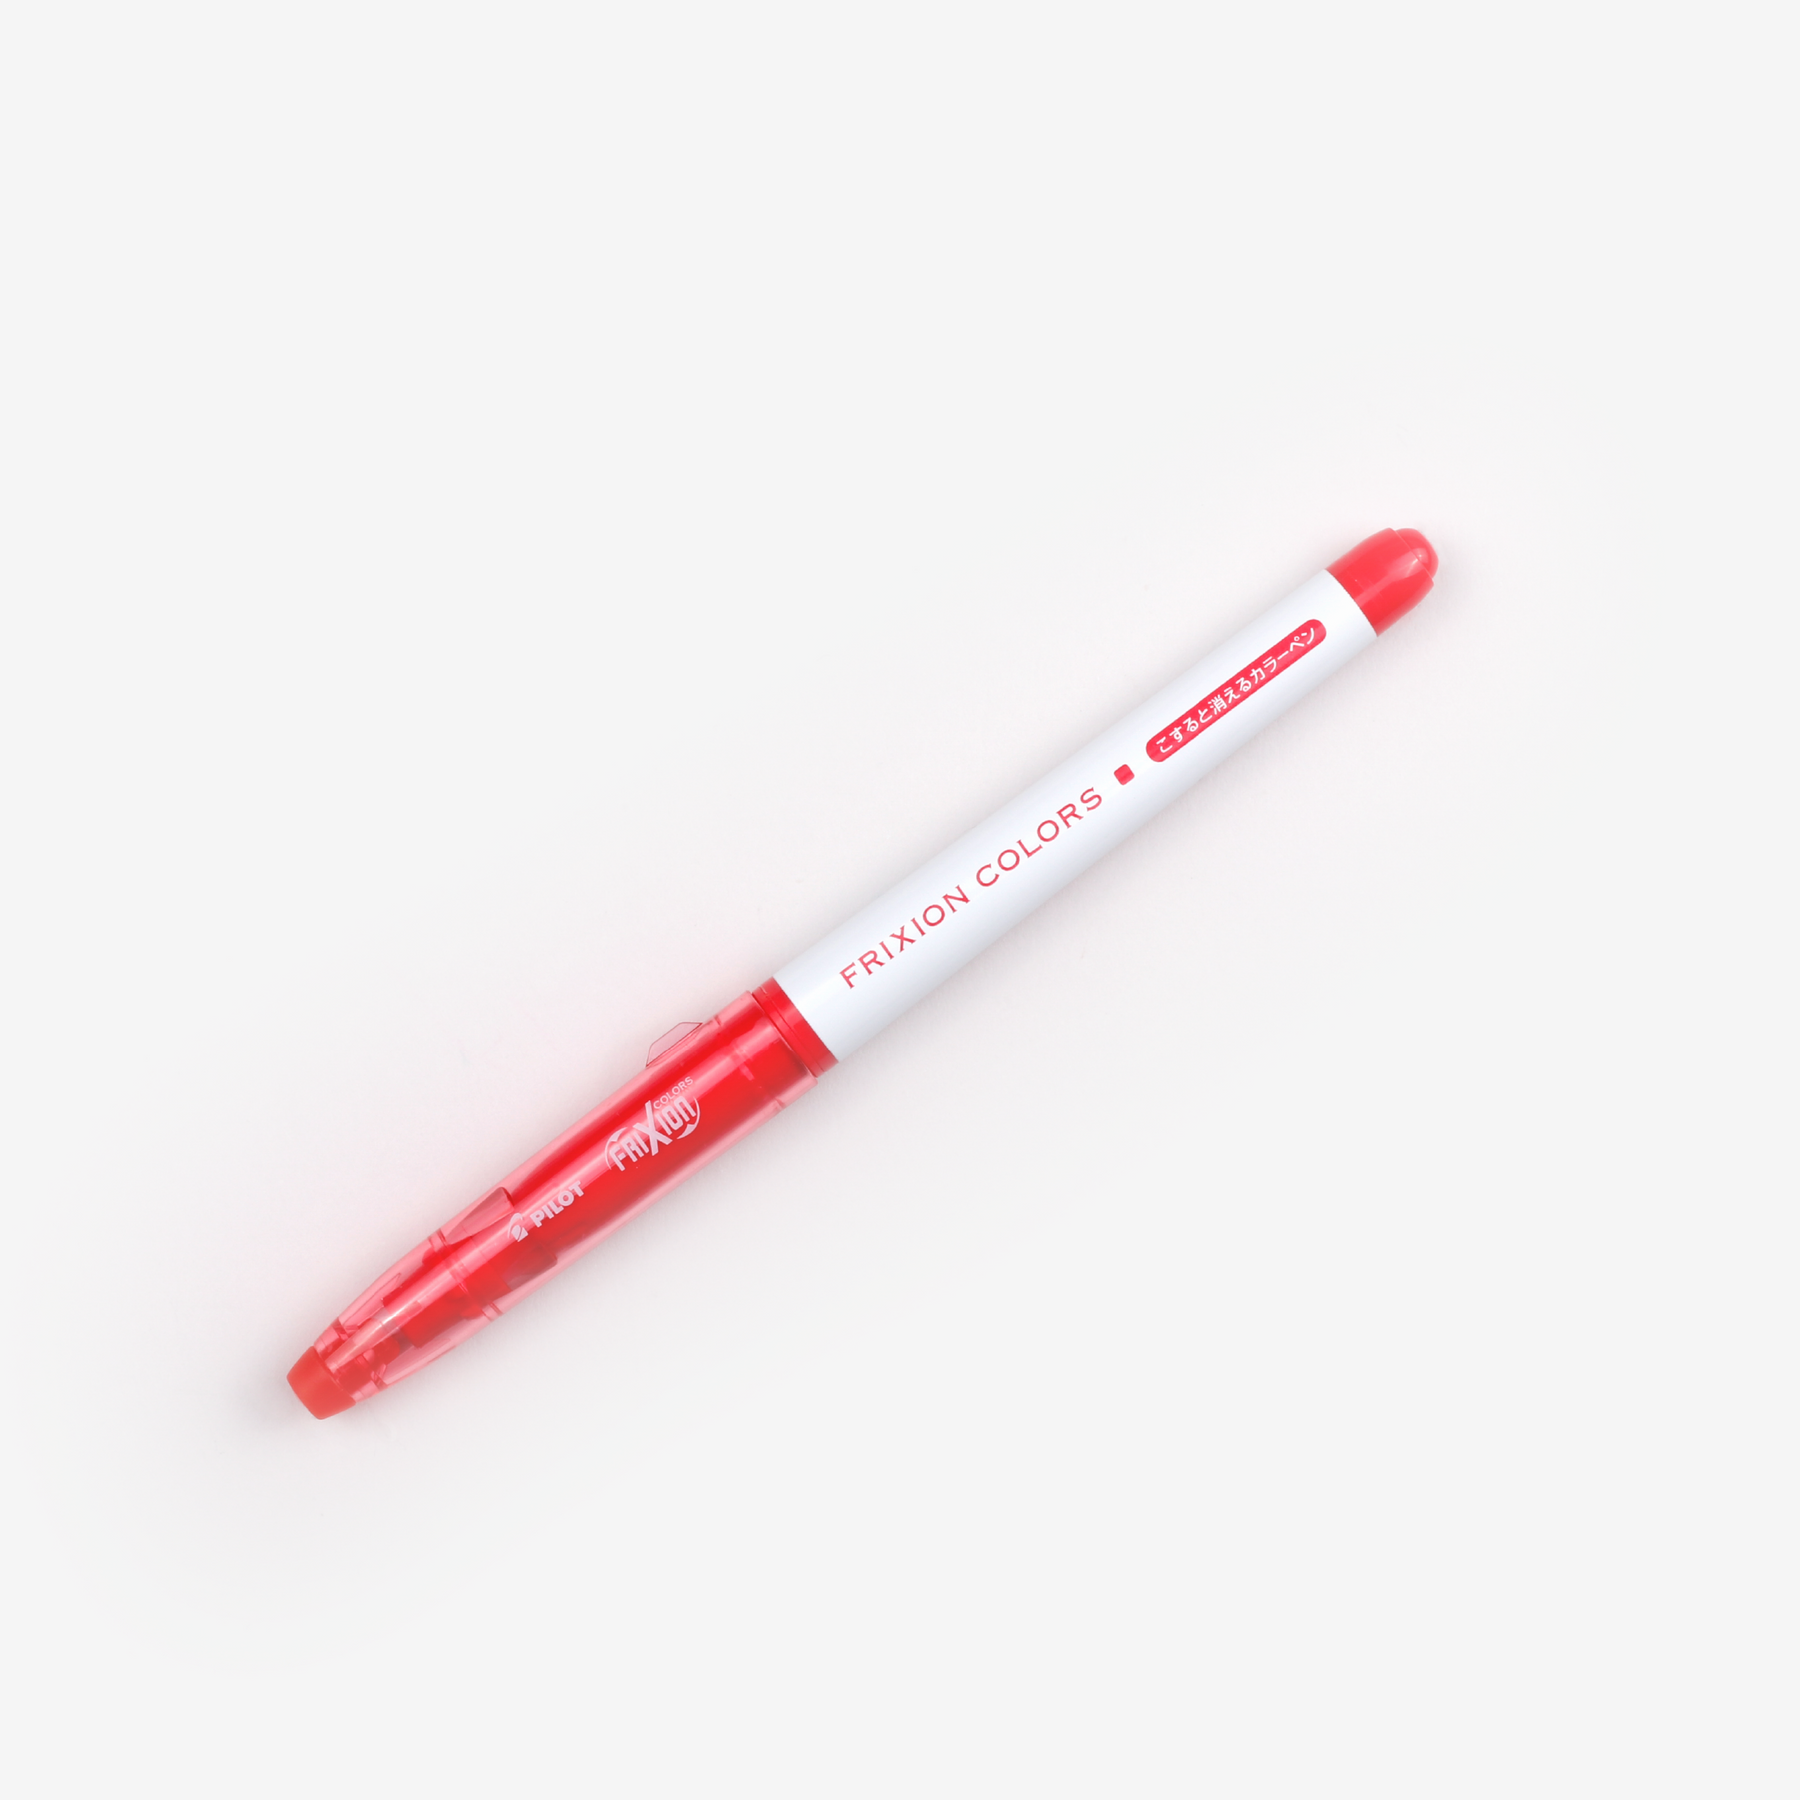 Pilot FriXion Colours Erasable Marker - Red